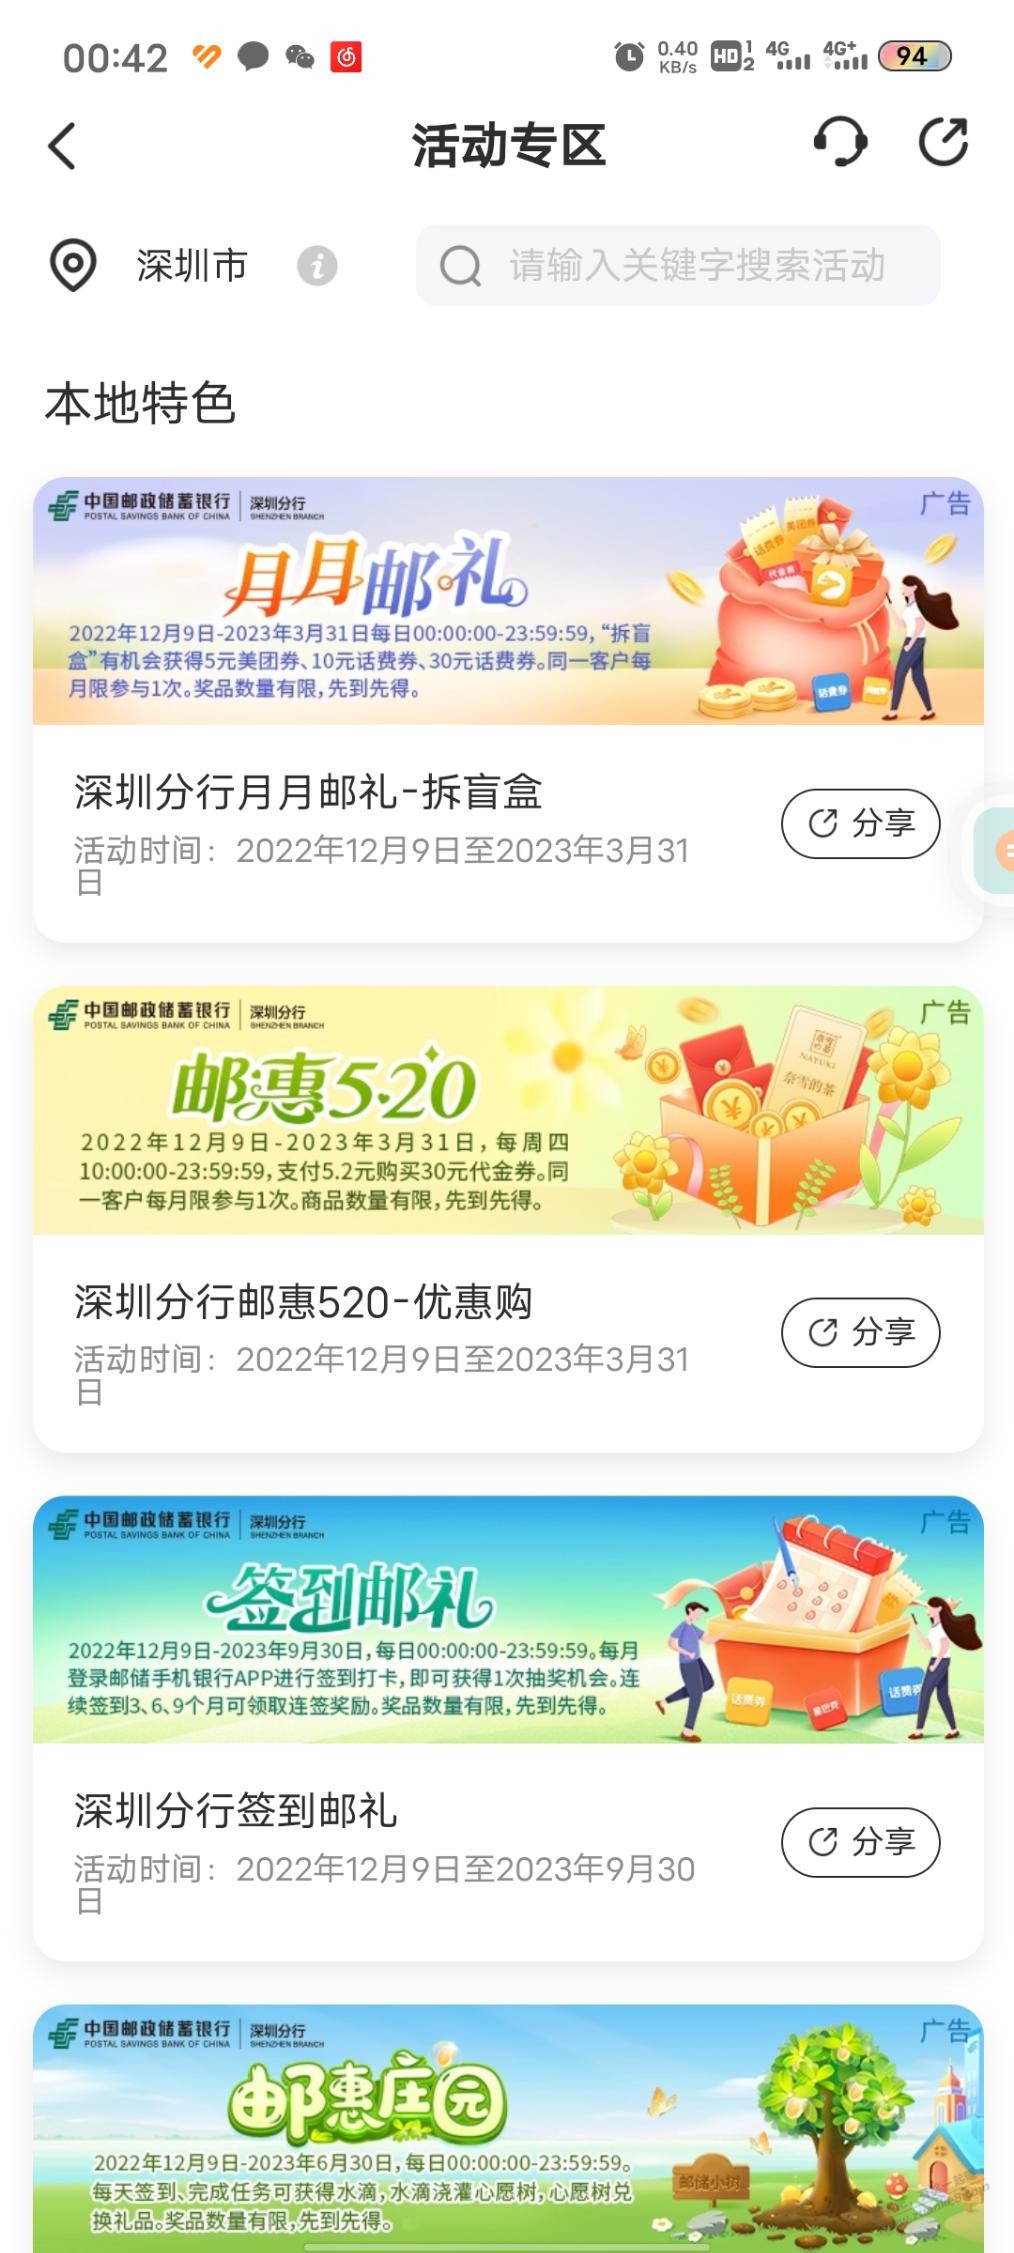 邮储银行开盲盒-惠小助(52huixz.com)